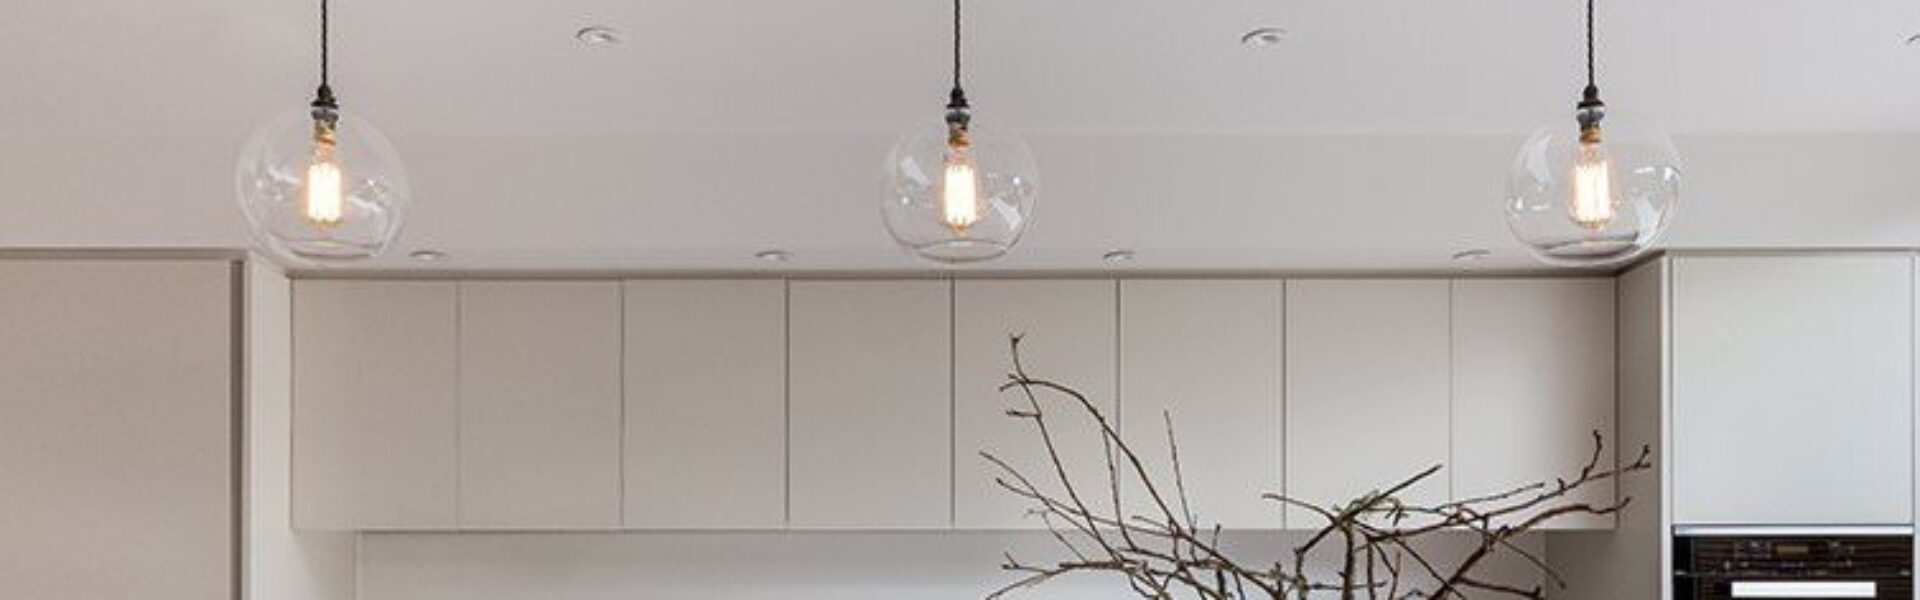 Designer lighting - Our modern glass globe Hereford pendant lights